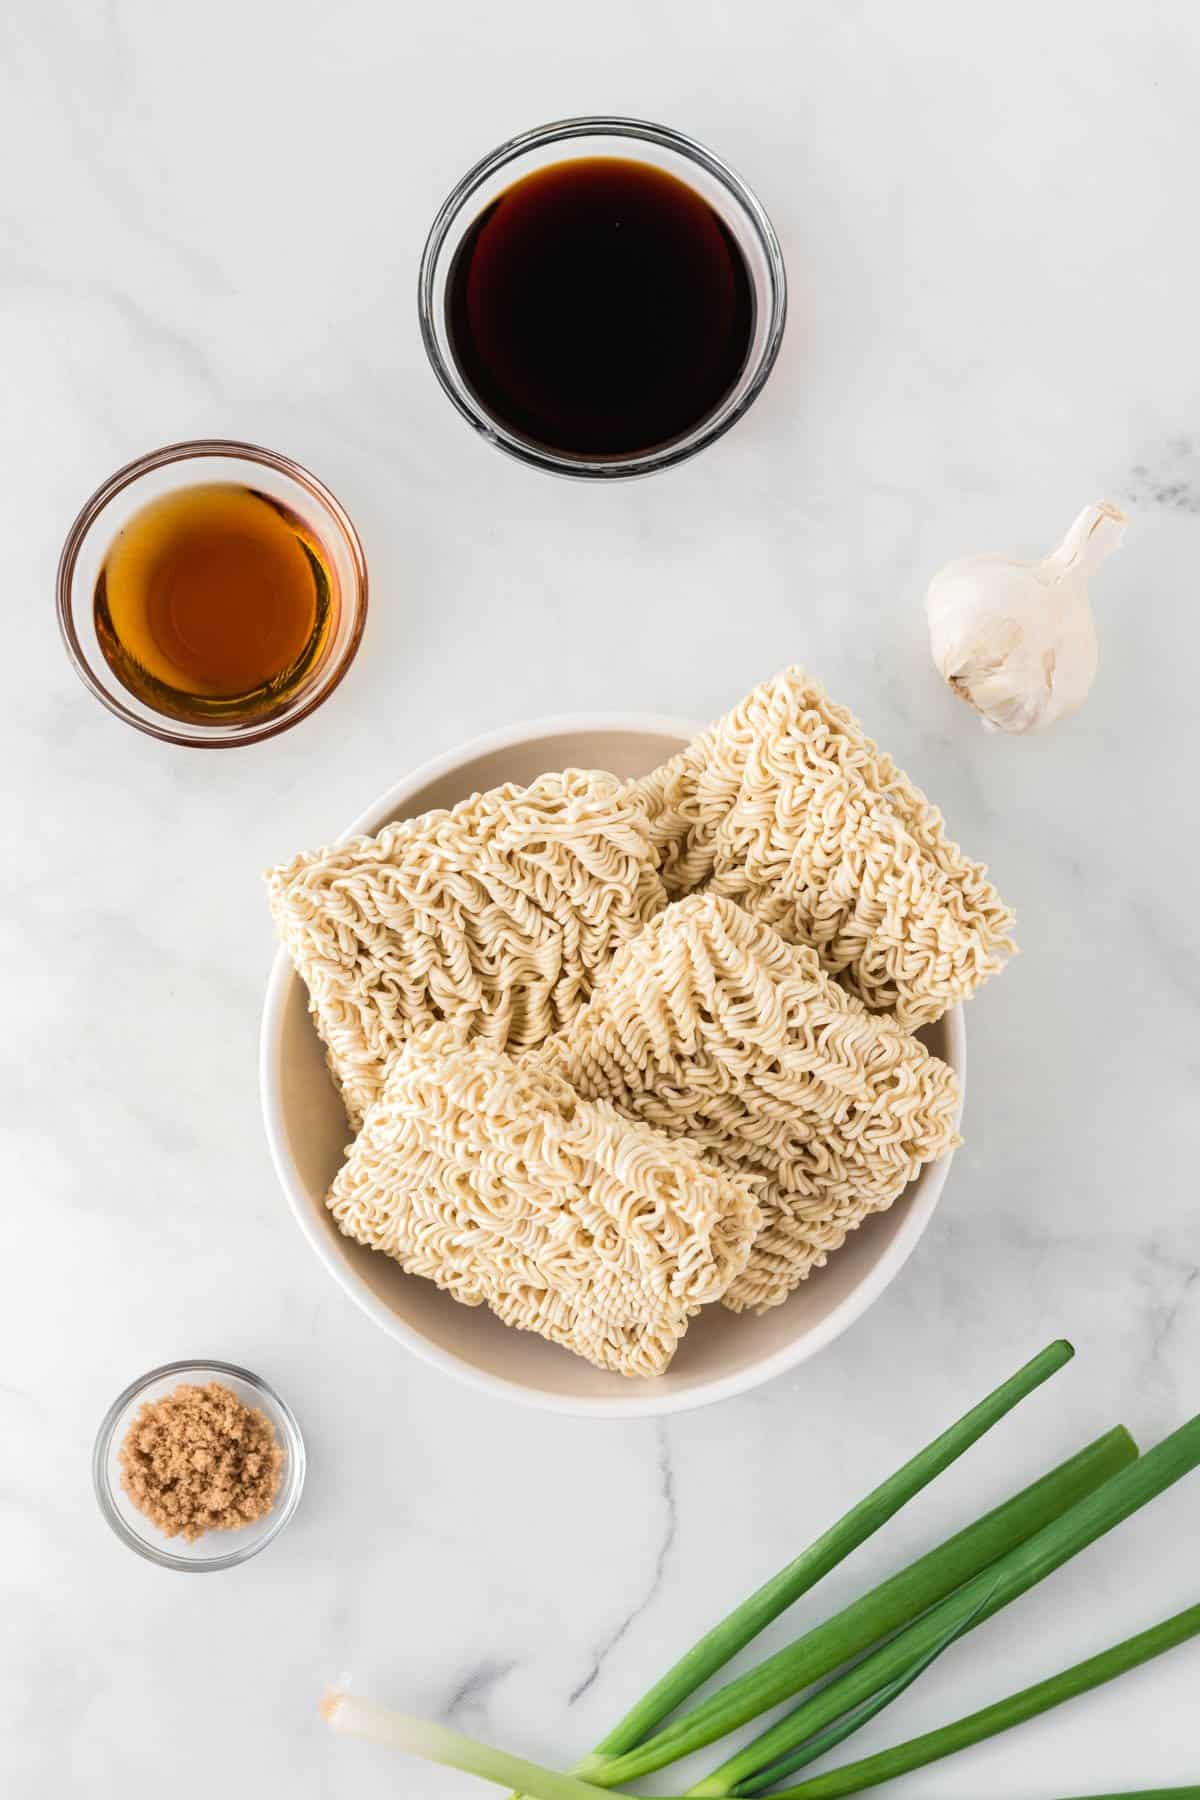 ingredients to make sesame garlic ramen noodles